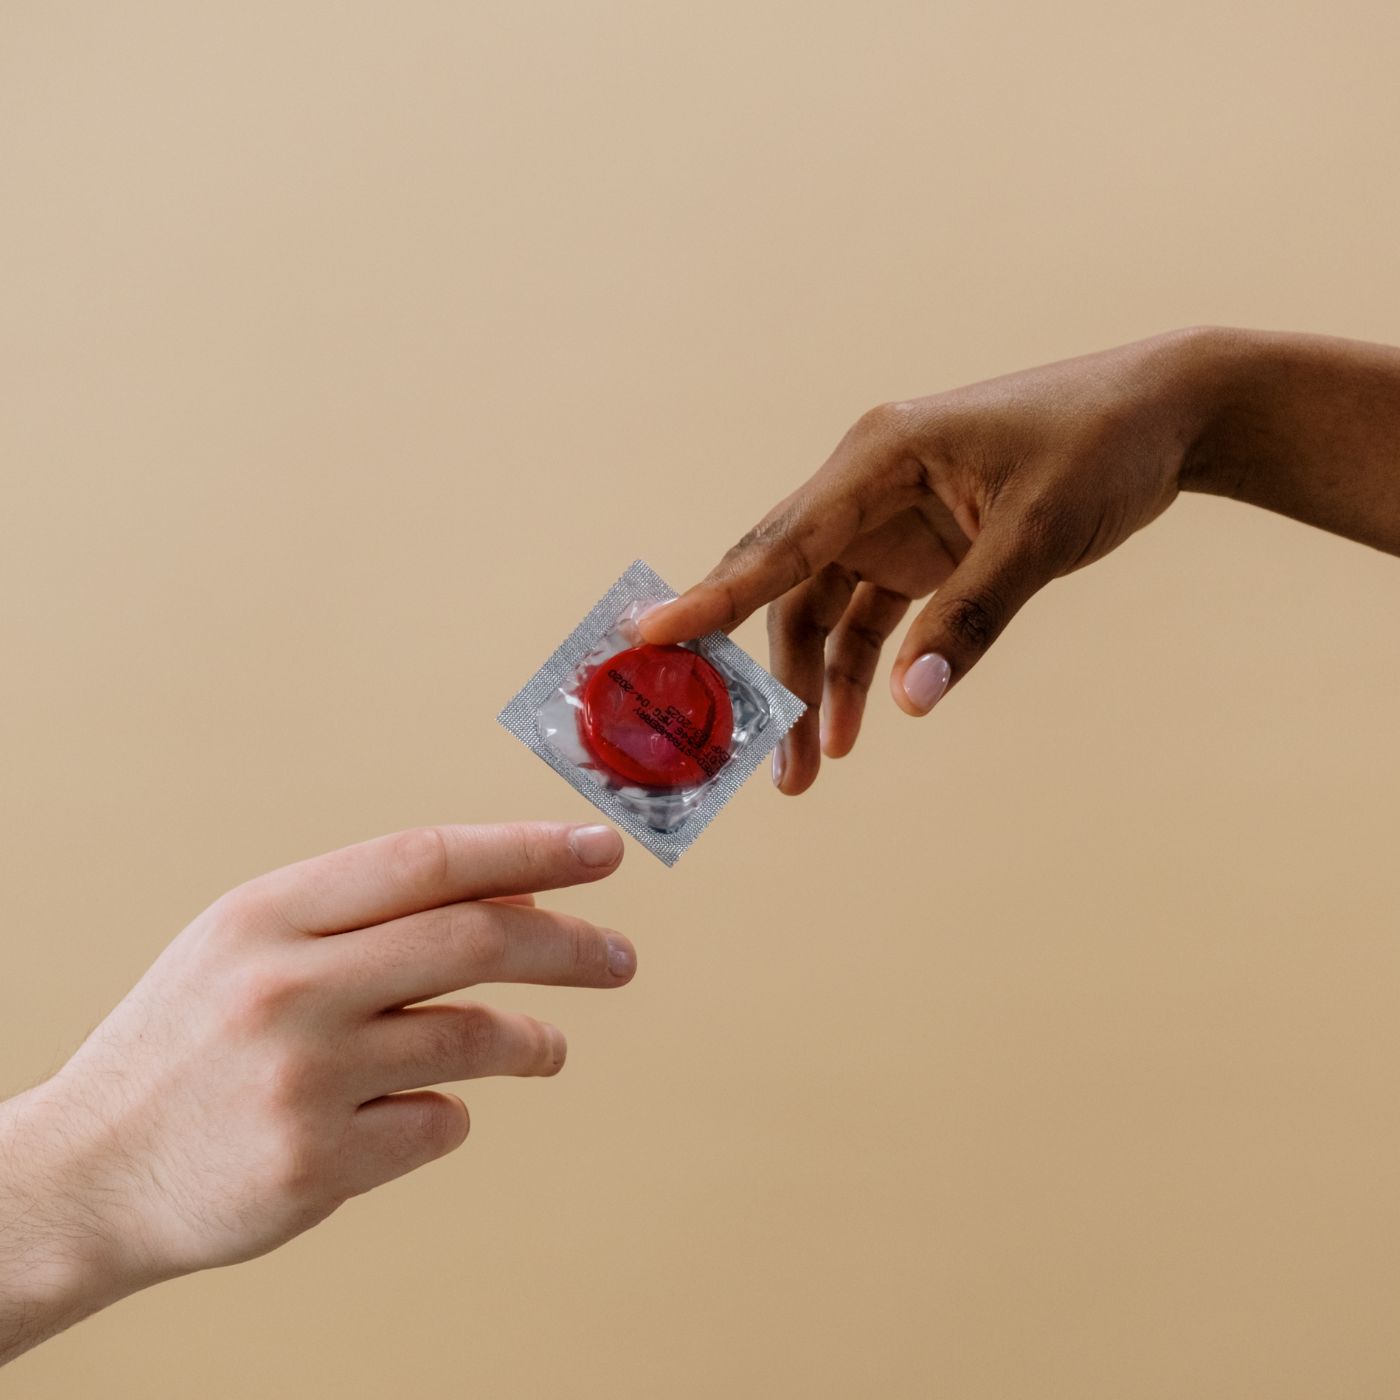 weiblich gelesene hand reicht männlich gelesener hand ein rotes kondom in verpackung